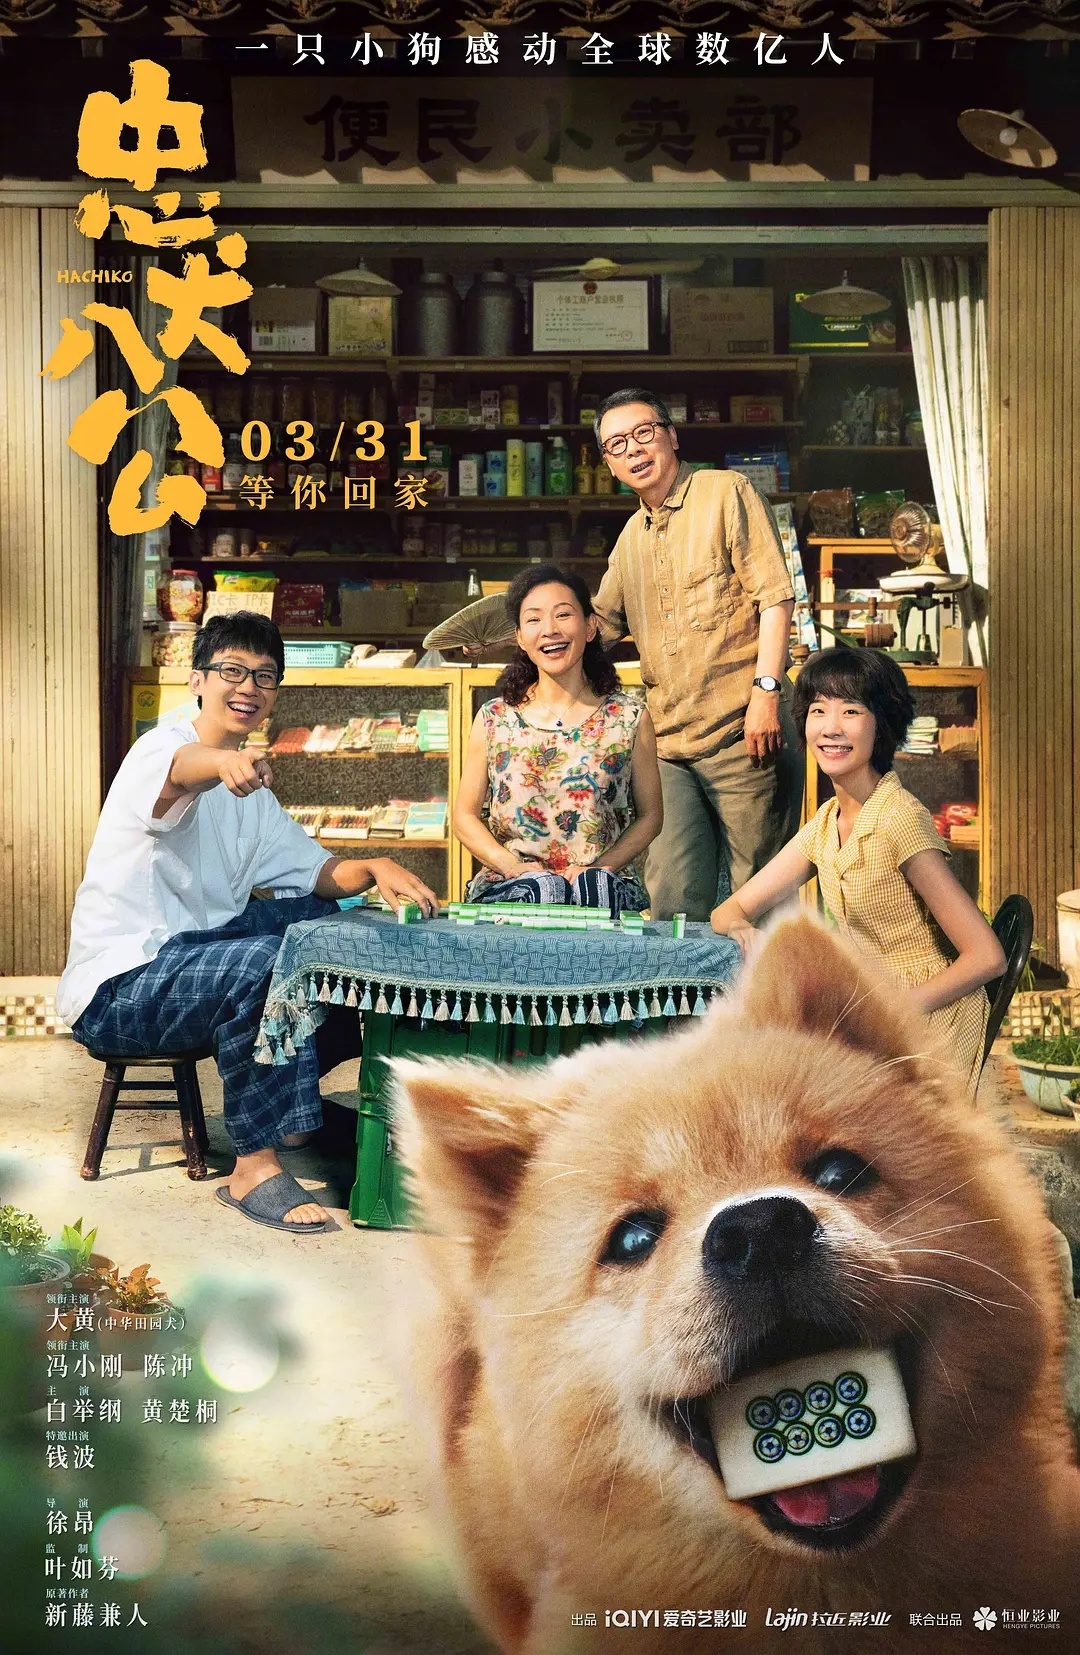 中国版《忠犬八公》来了 “八公”改名“八筒”_娱乐资讯_硬汉博客网